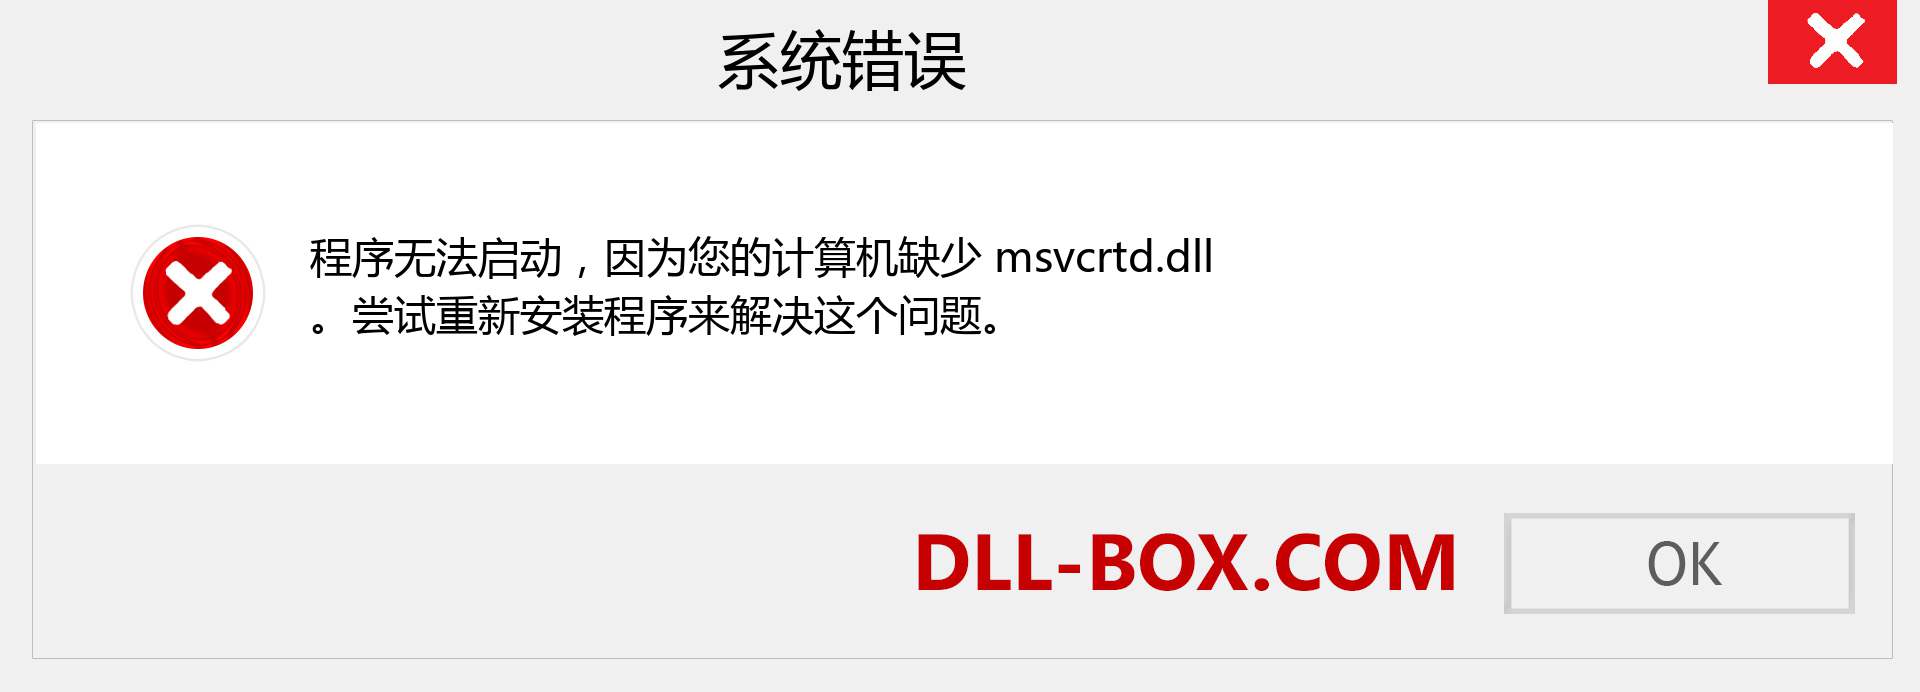 msvcrtd.dll 文件丢失？。 适用于 Windows 7、8、10 的下载 - 修复 Windows、照片、图像上的 msvcrtd dll 丢失错误